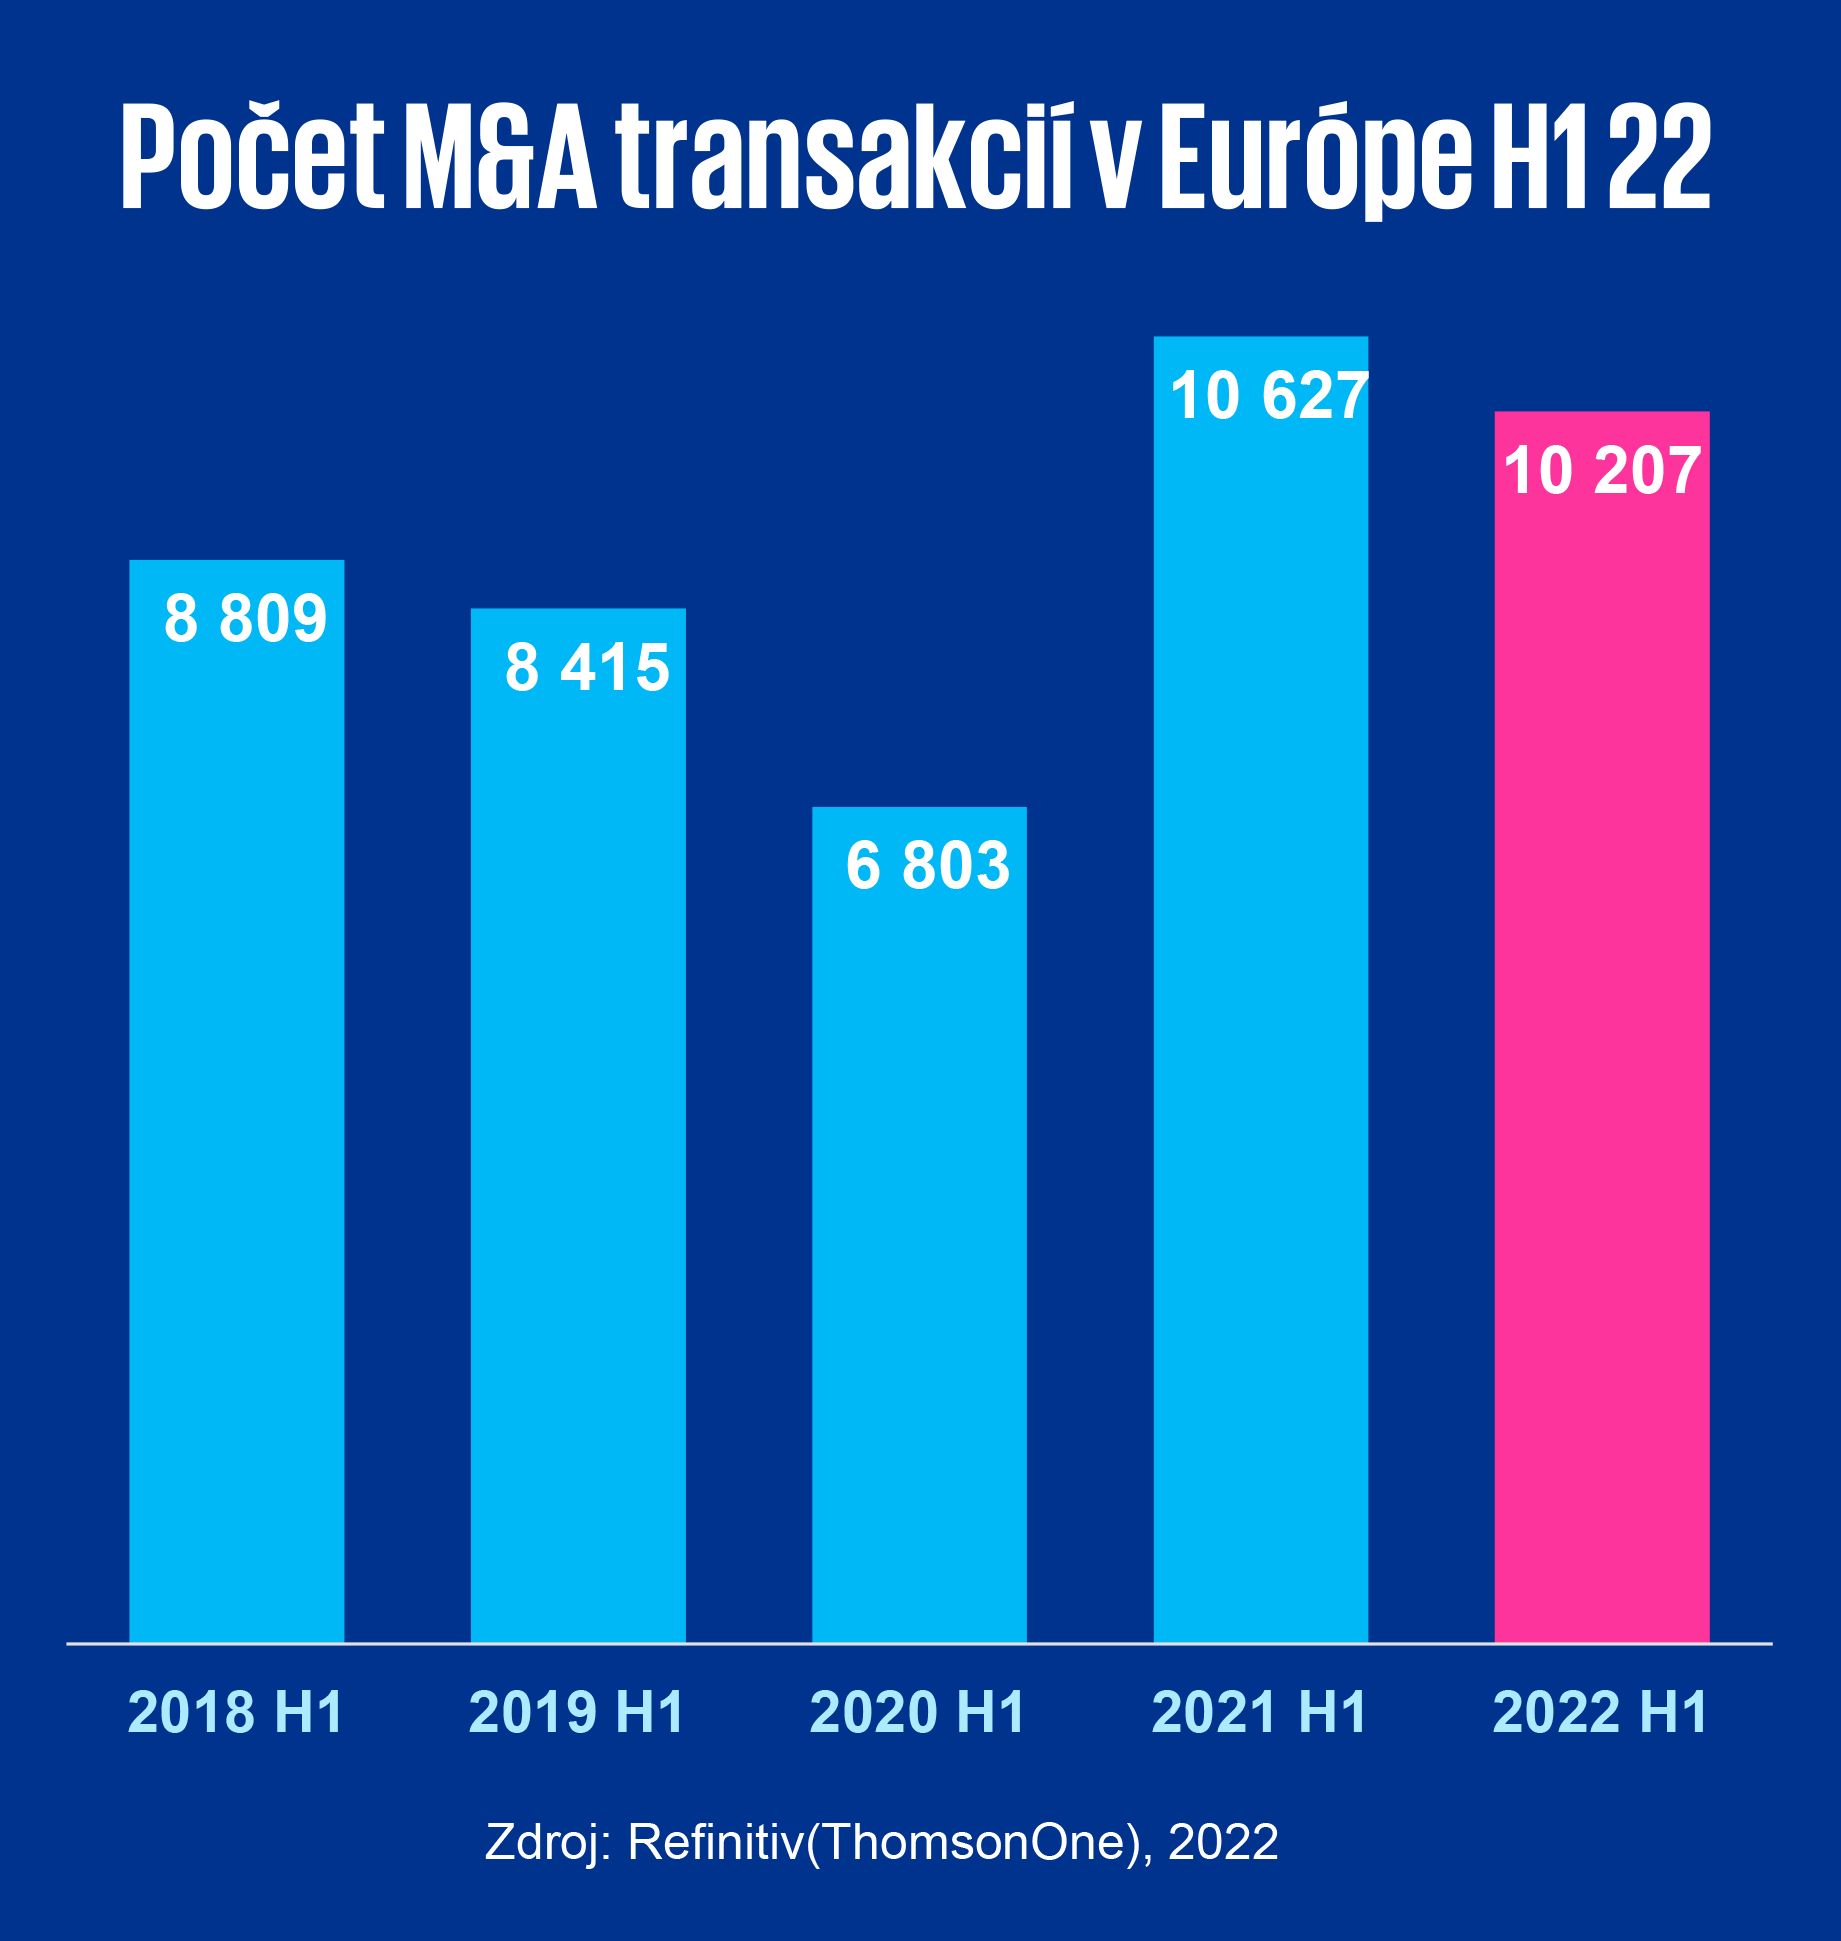 europske m&a transakcie 1.polrok 2022